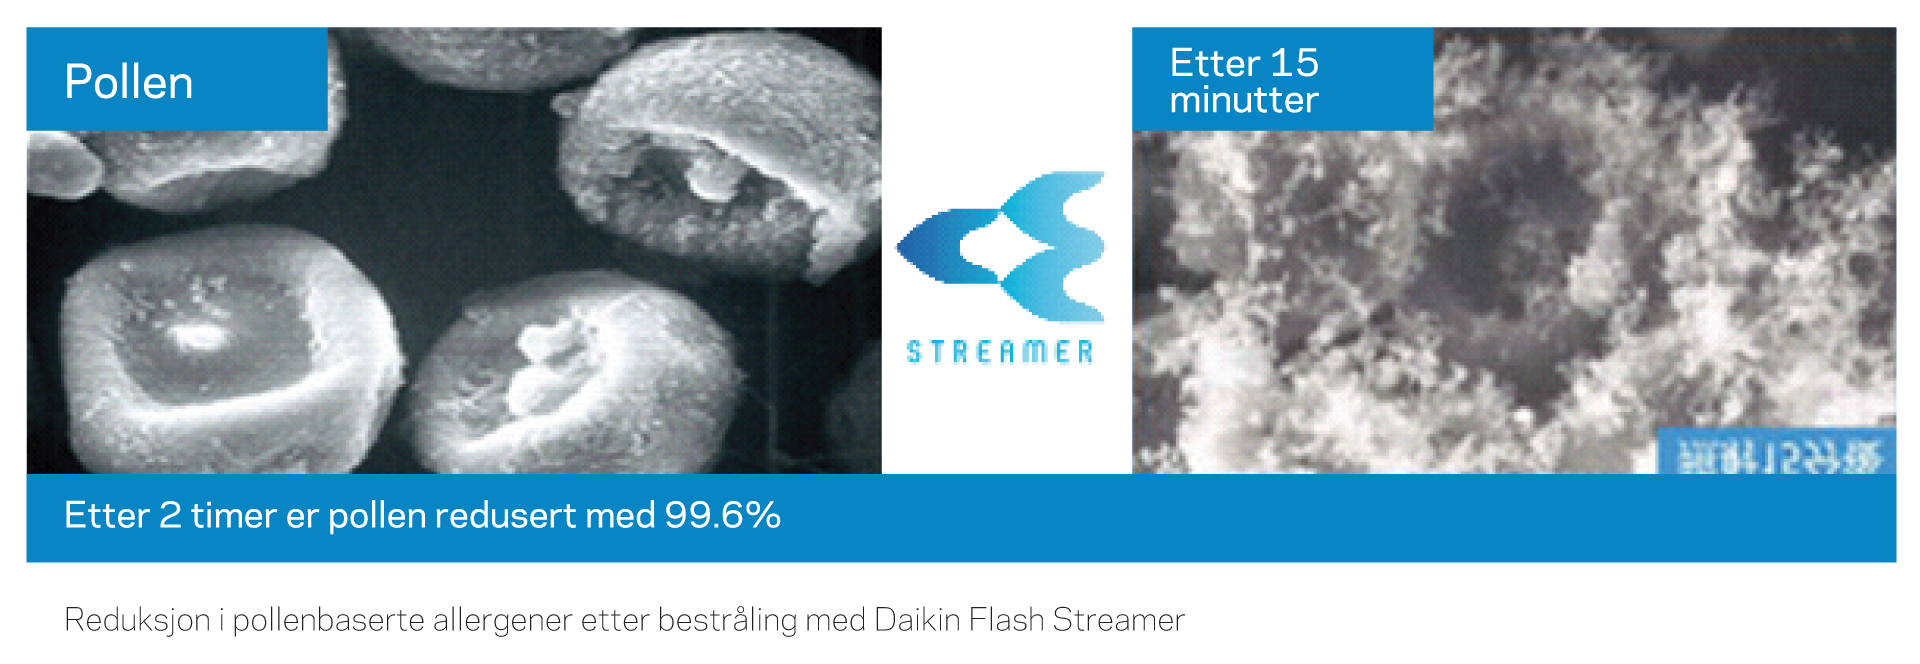 Daikin Flash streamer